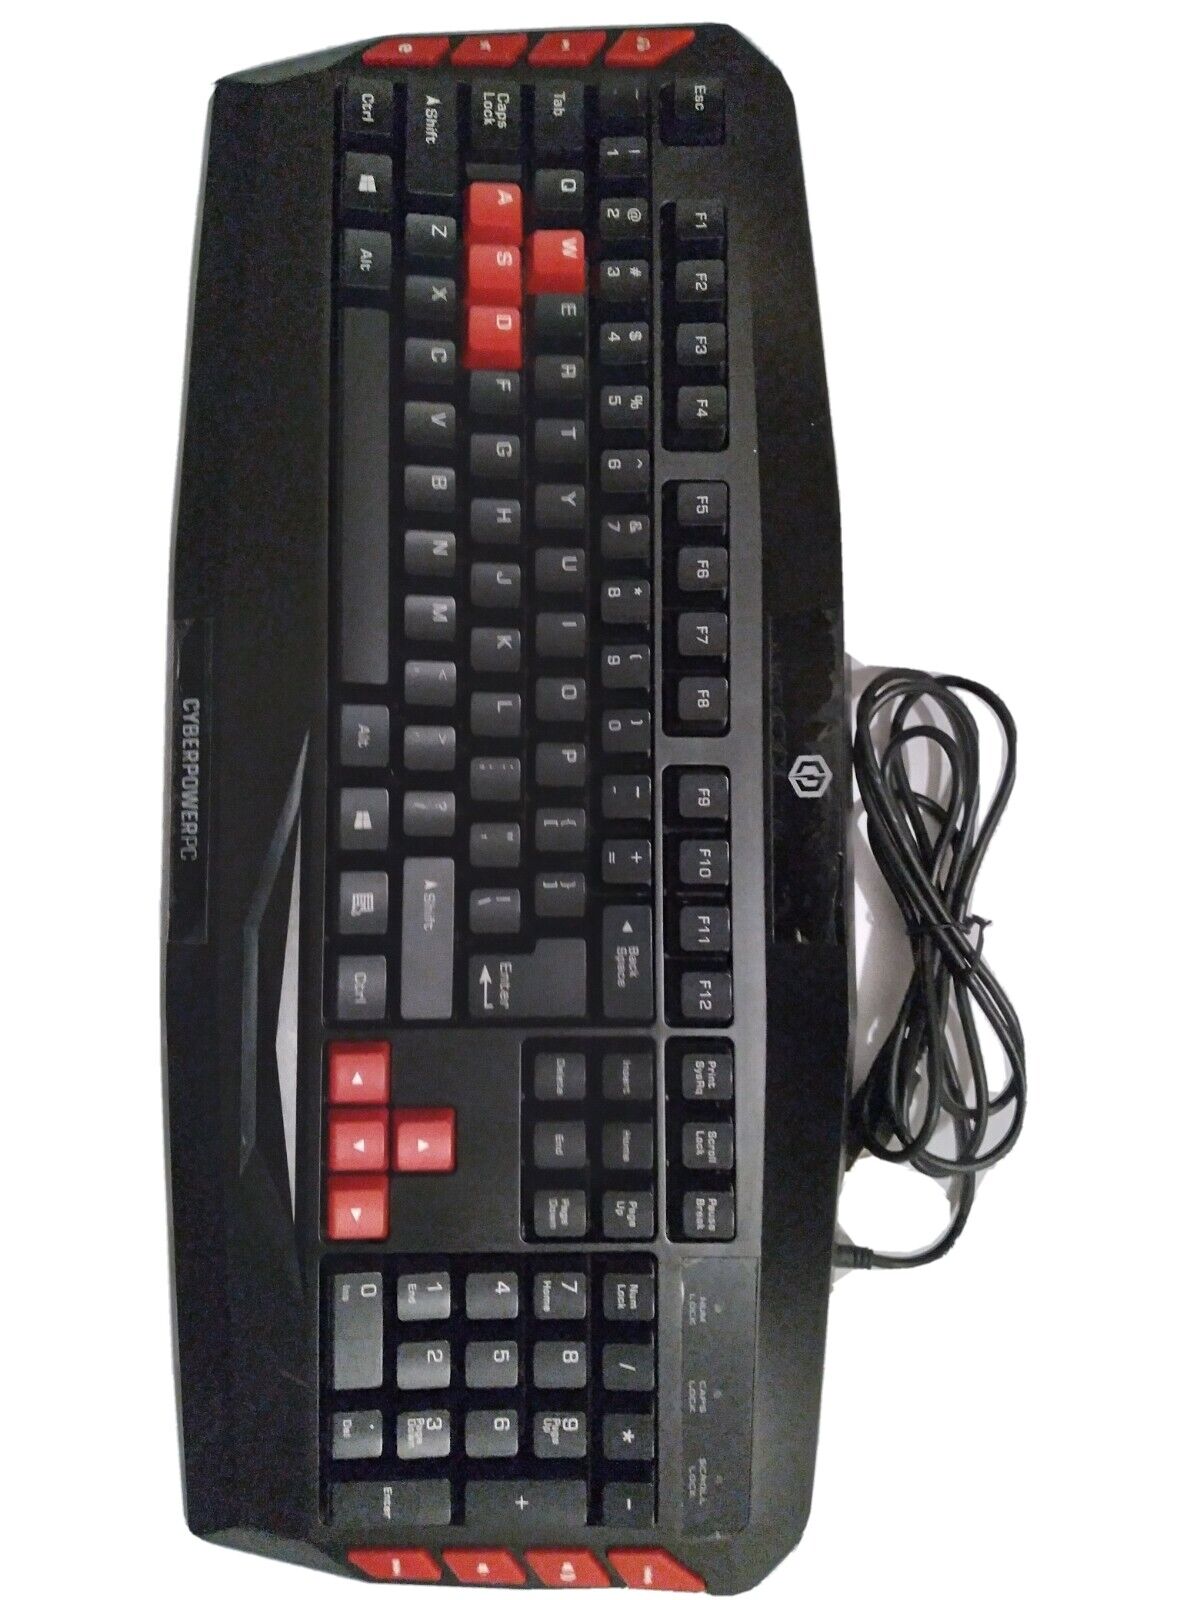 Cyber power Pc Keyboard 